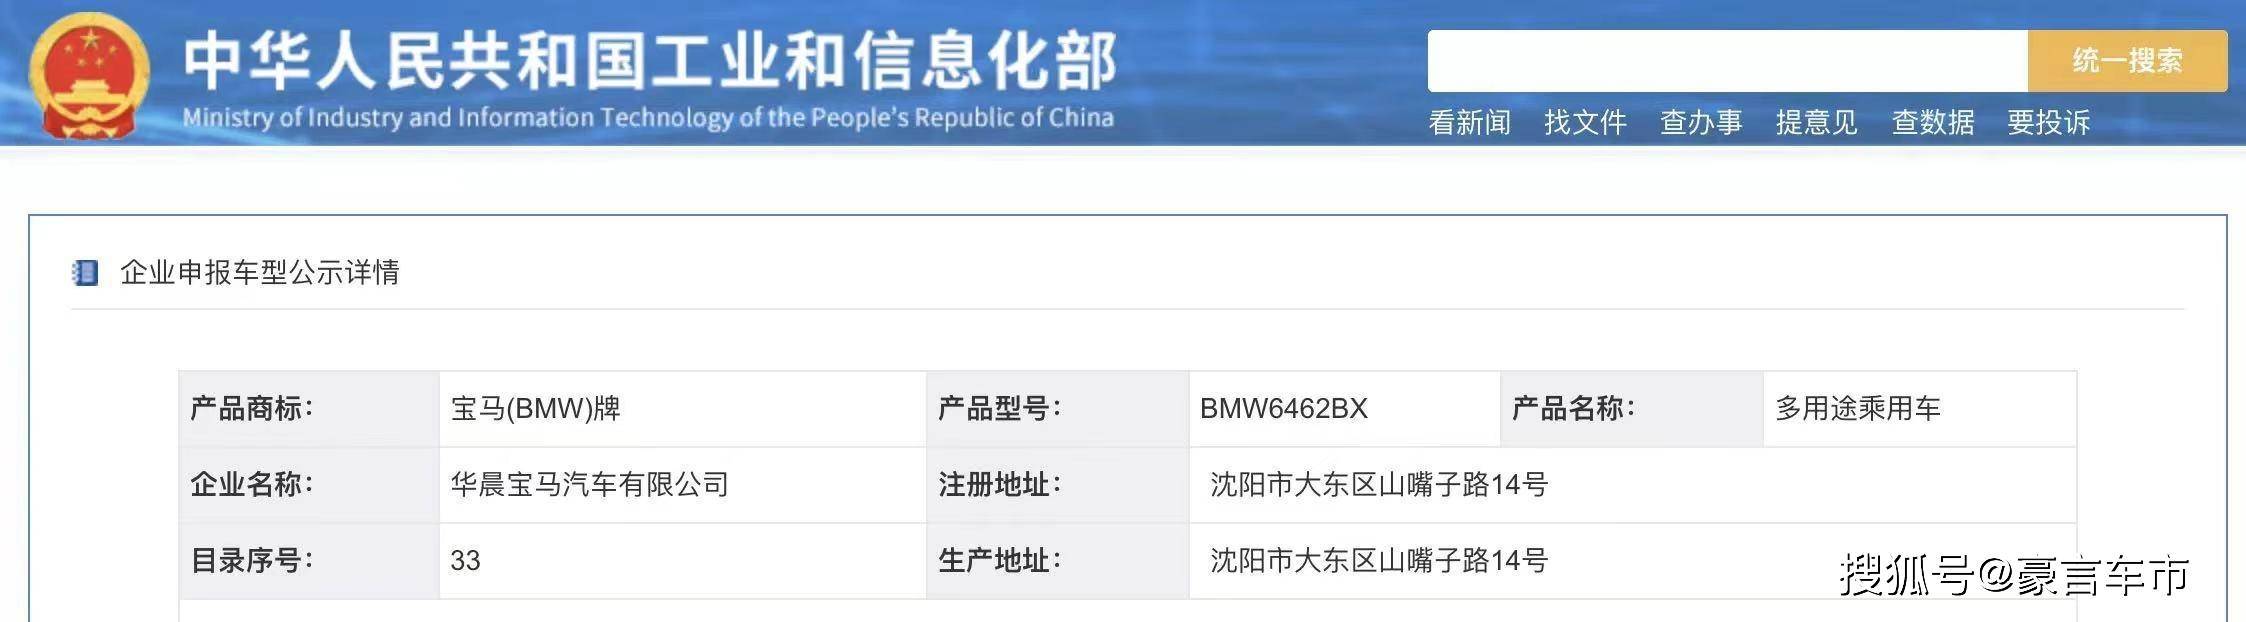 大老虎吃苹果视频加长版的:国产换代X1公布申报信息 共三款车型-第1张图片-太平洋在线下载